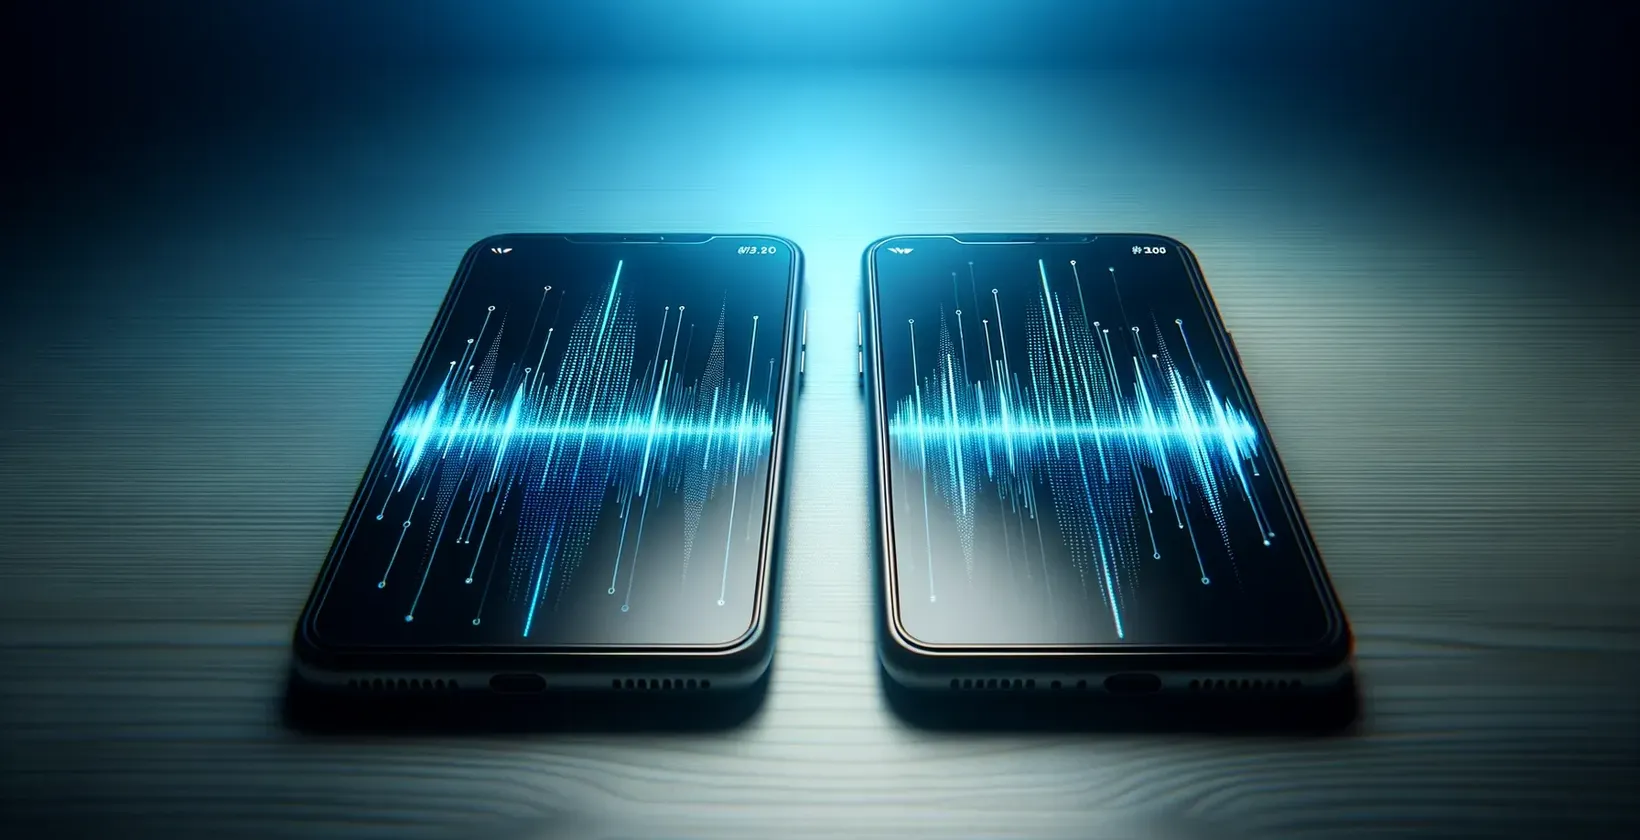 Smartphones viser dynamiske digitale bølgeformer, der repræsenterer transskriptionssoftwarefunktioner